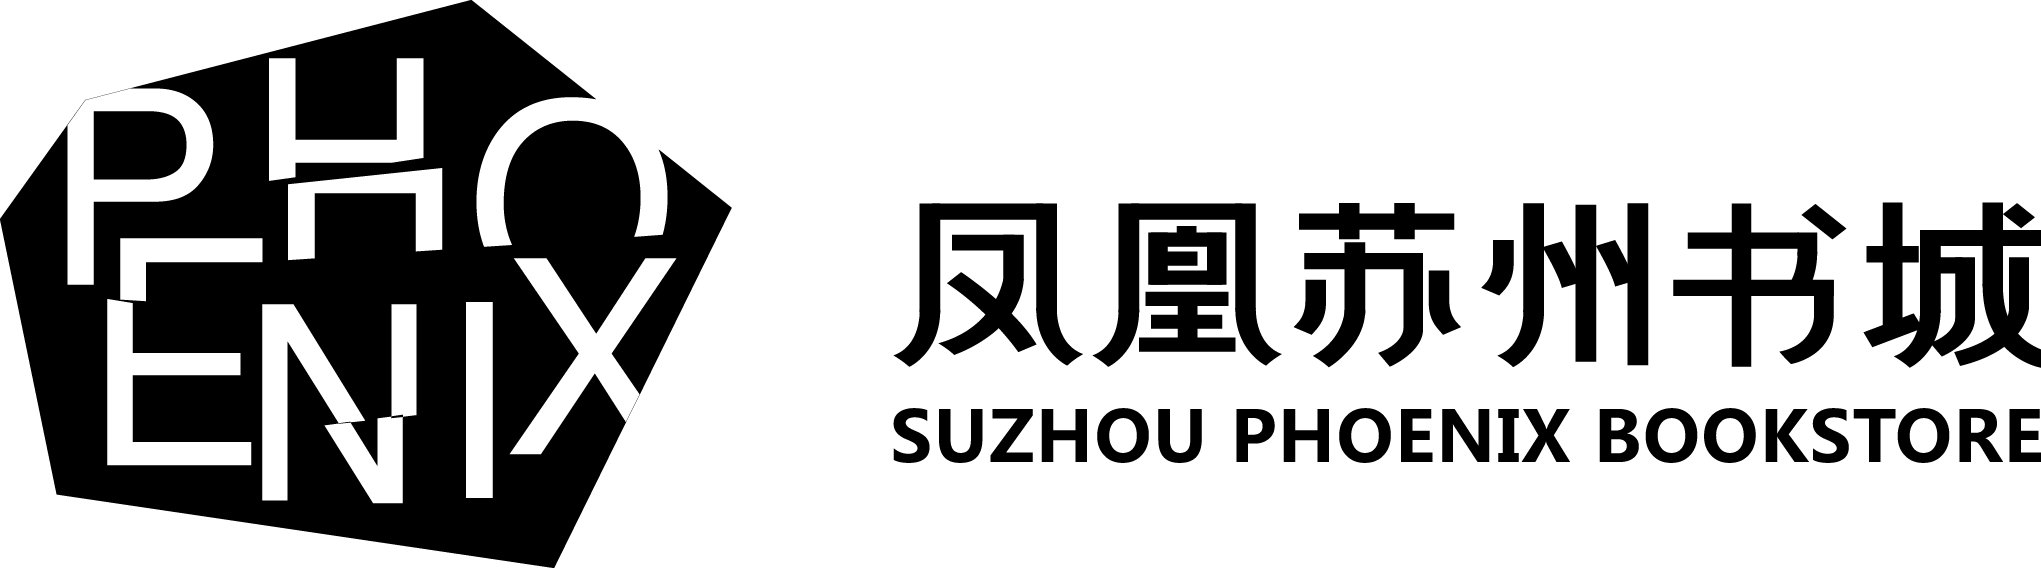 鳳凰蘇州書城logo